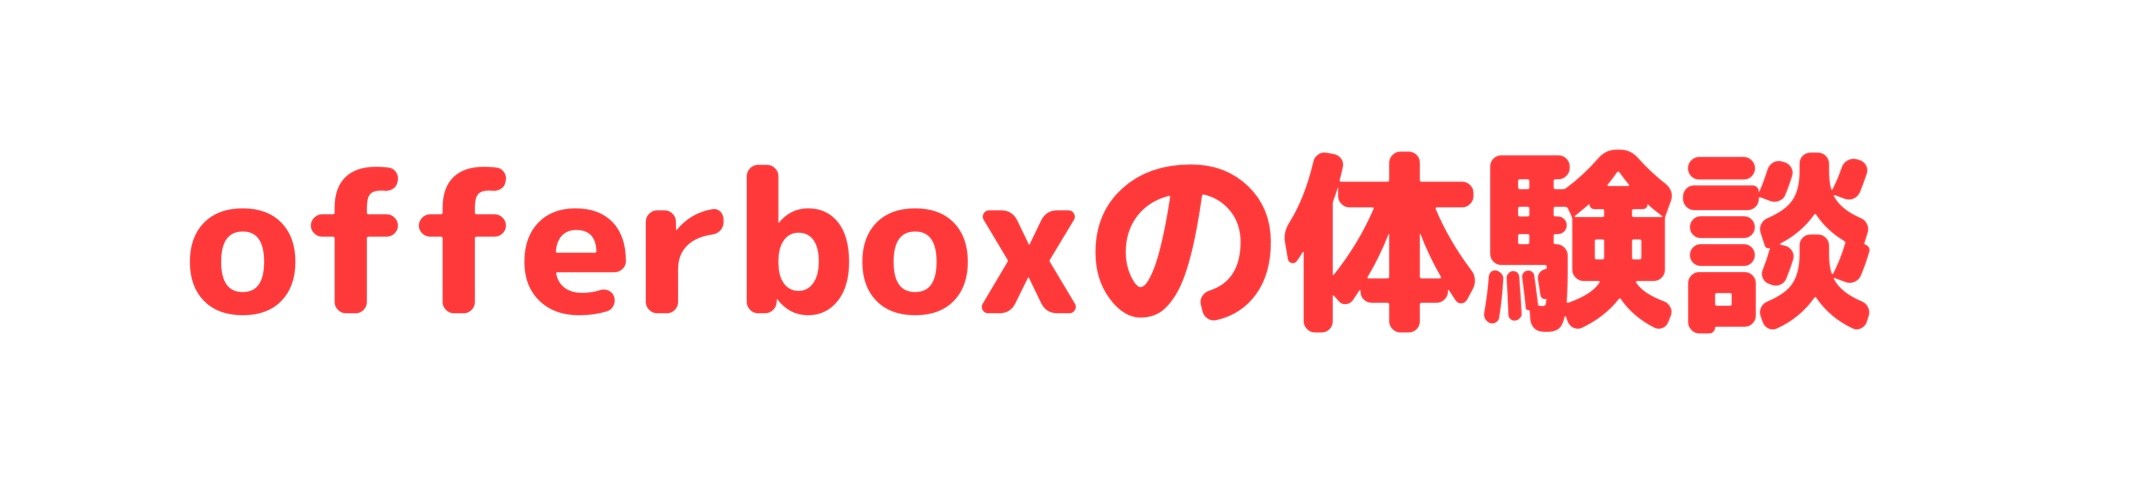 OfferBox(オファーボックス)の体験談